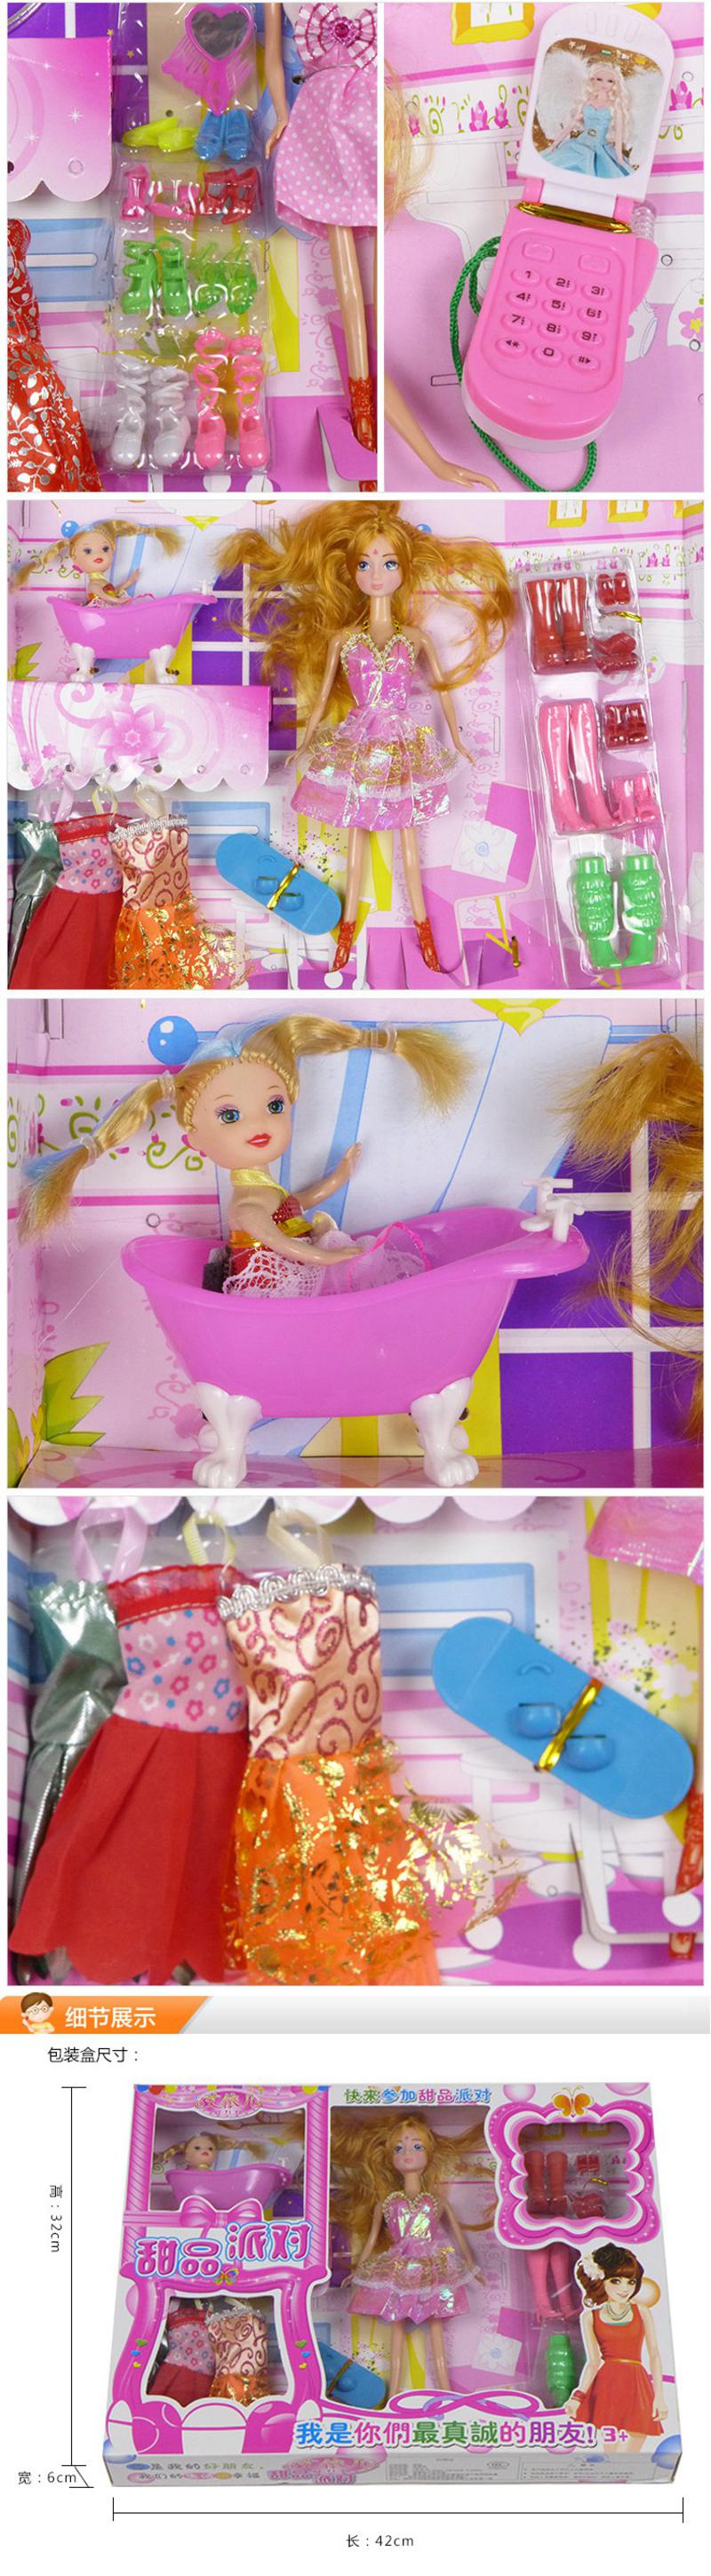 艾依儿芭比娃娃836女孩系列套装礼盒 女生玩具生日礼物  两款随机